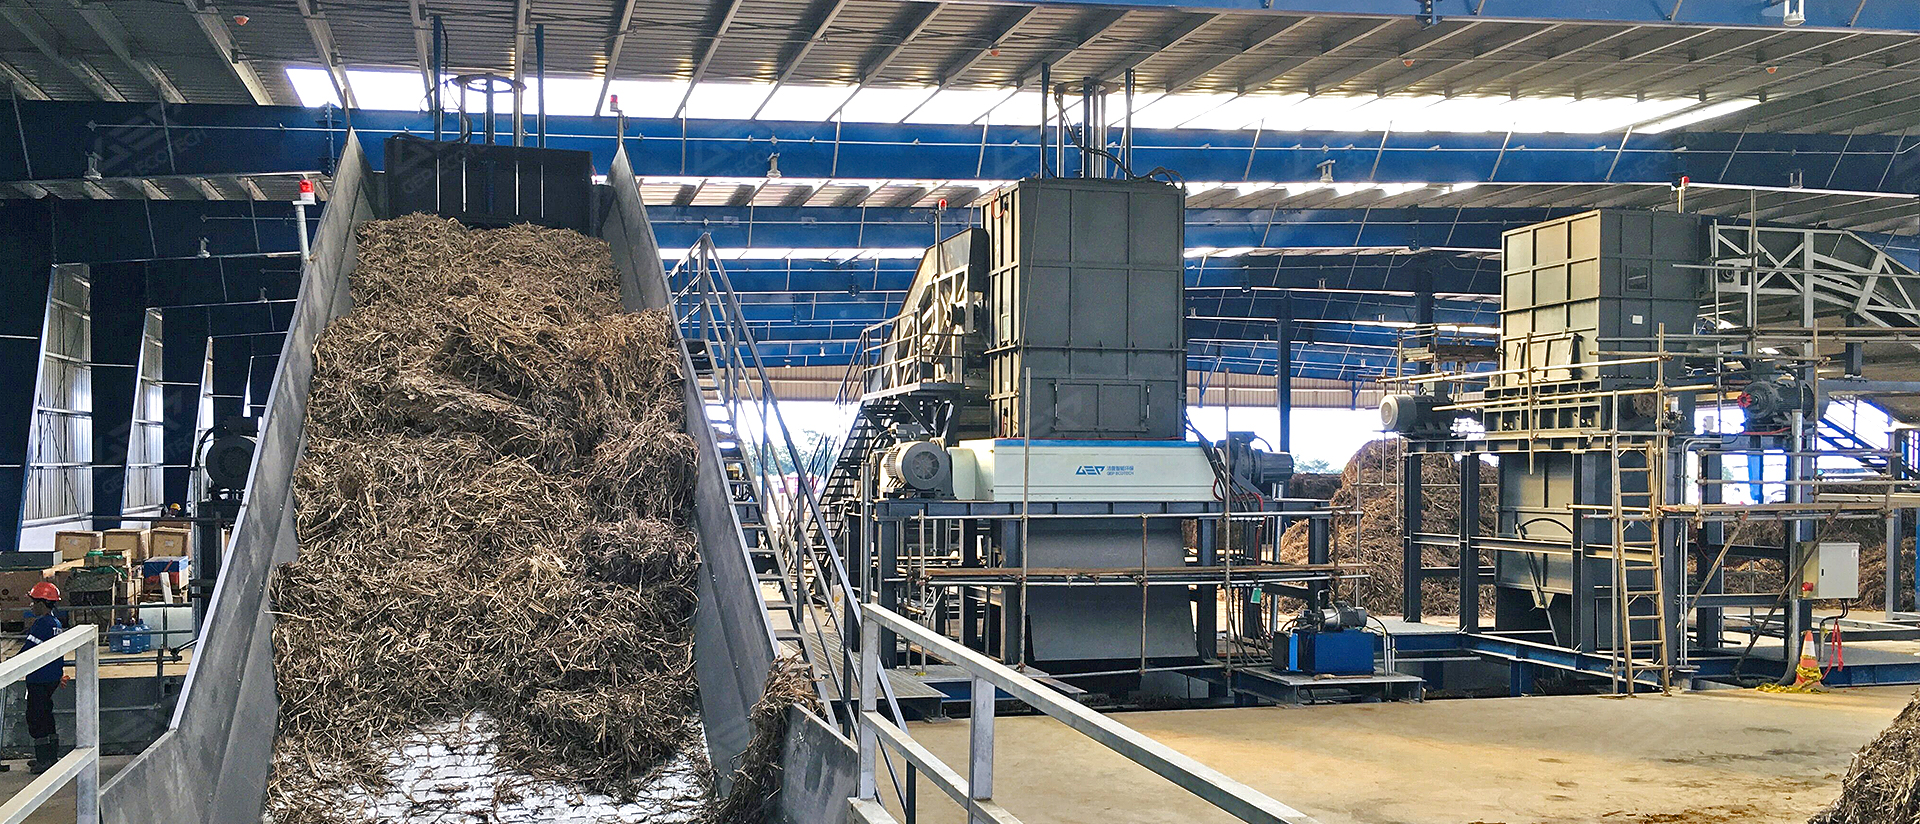 Verarbeitung von Biomasseabfällen